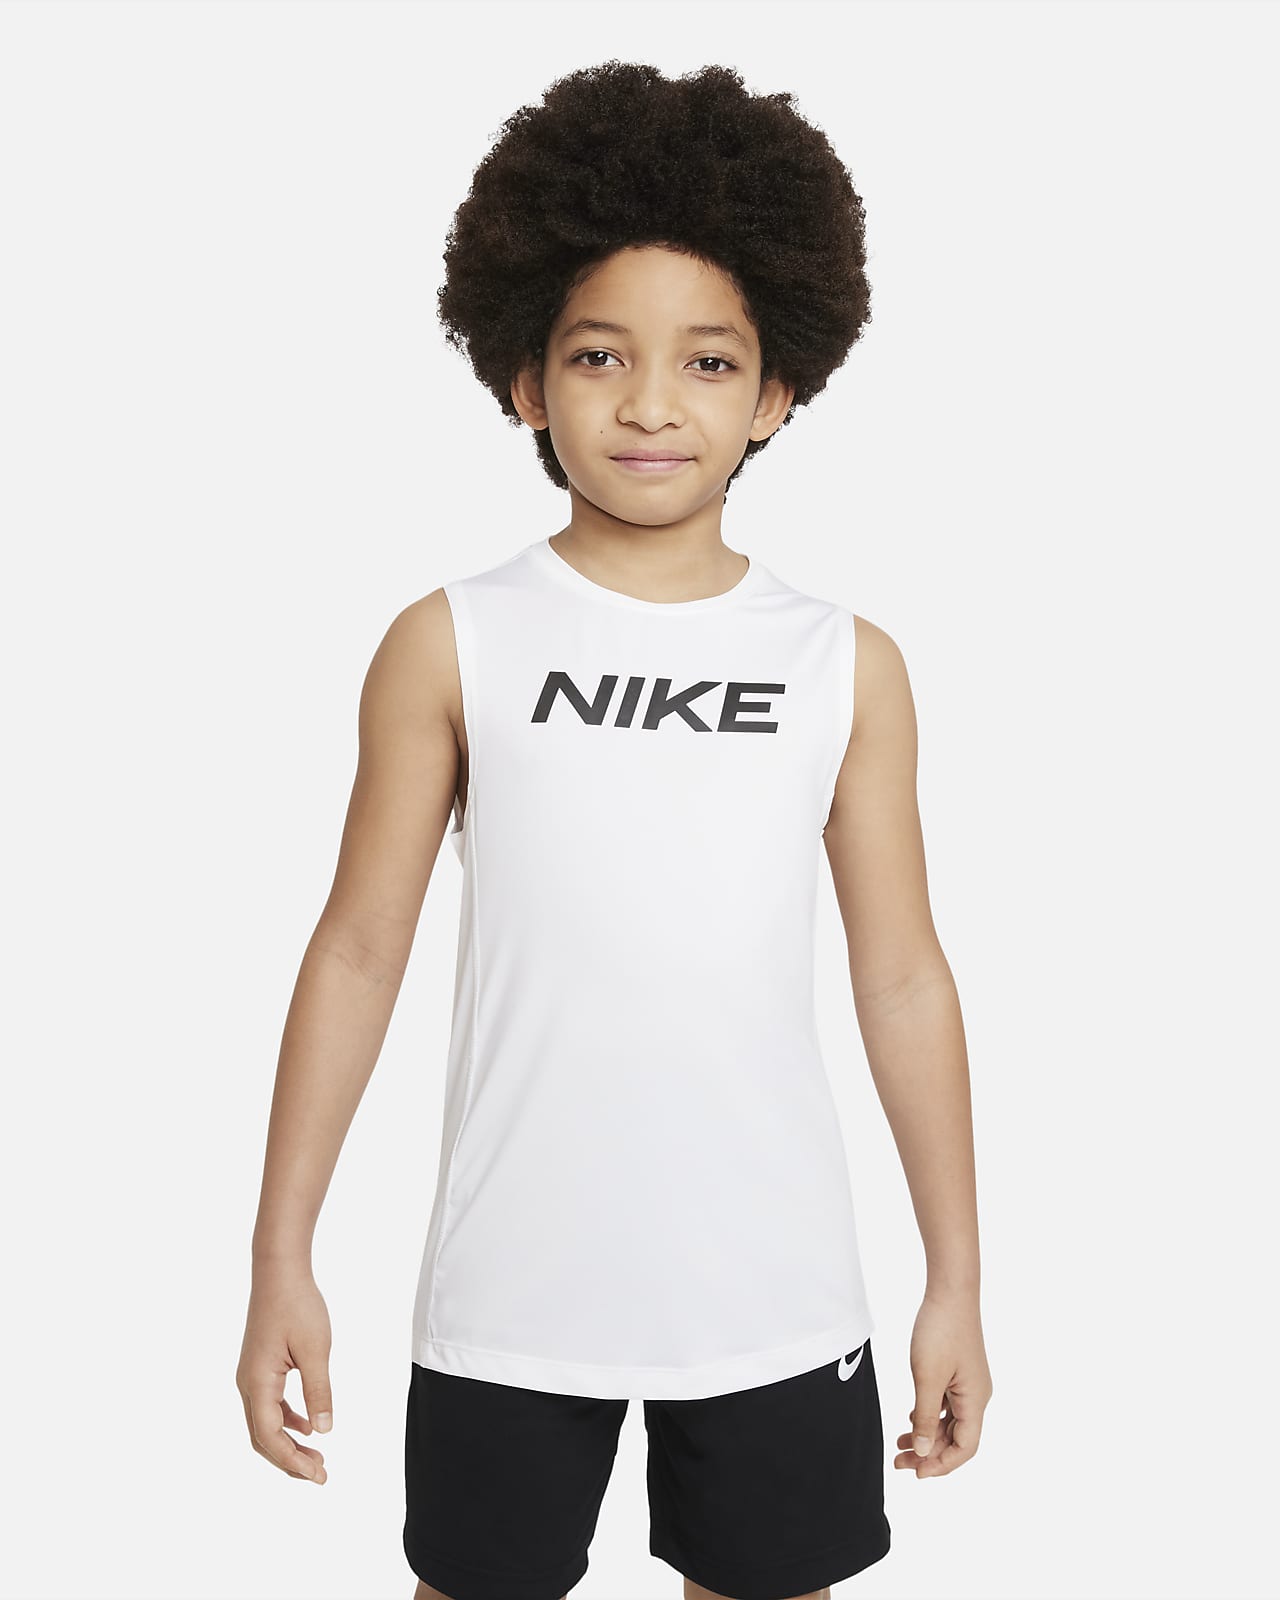 Nike Pro ärmelloses Oberteil für ältere Kinder (Jungen)